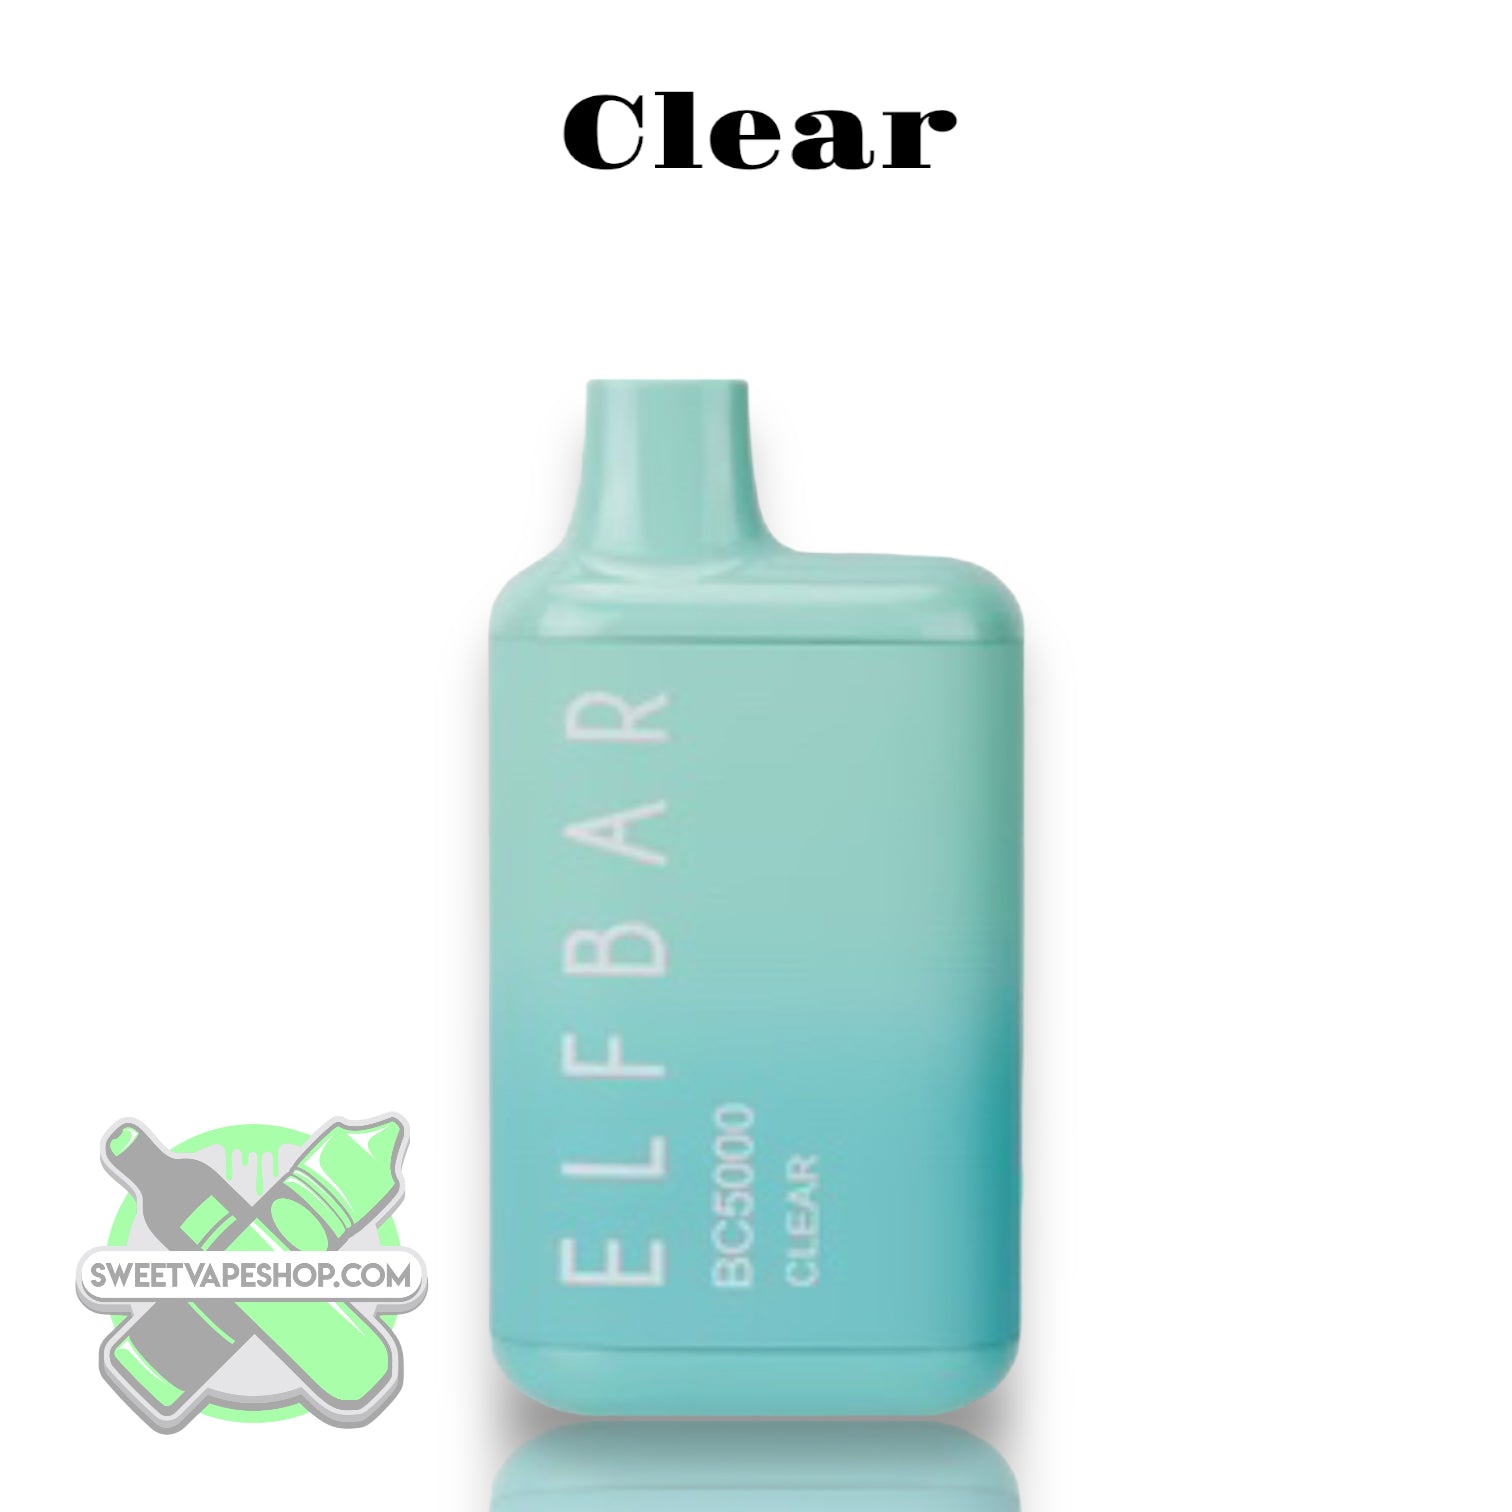 Elfbar - BC5000 - 5000 Puff Disposable